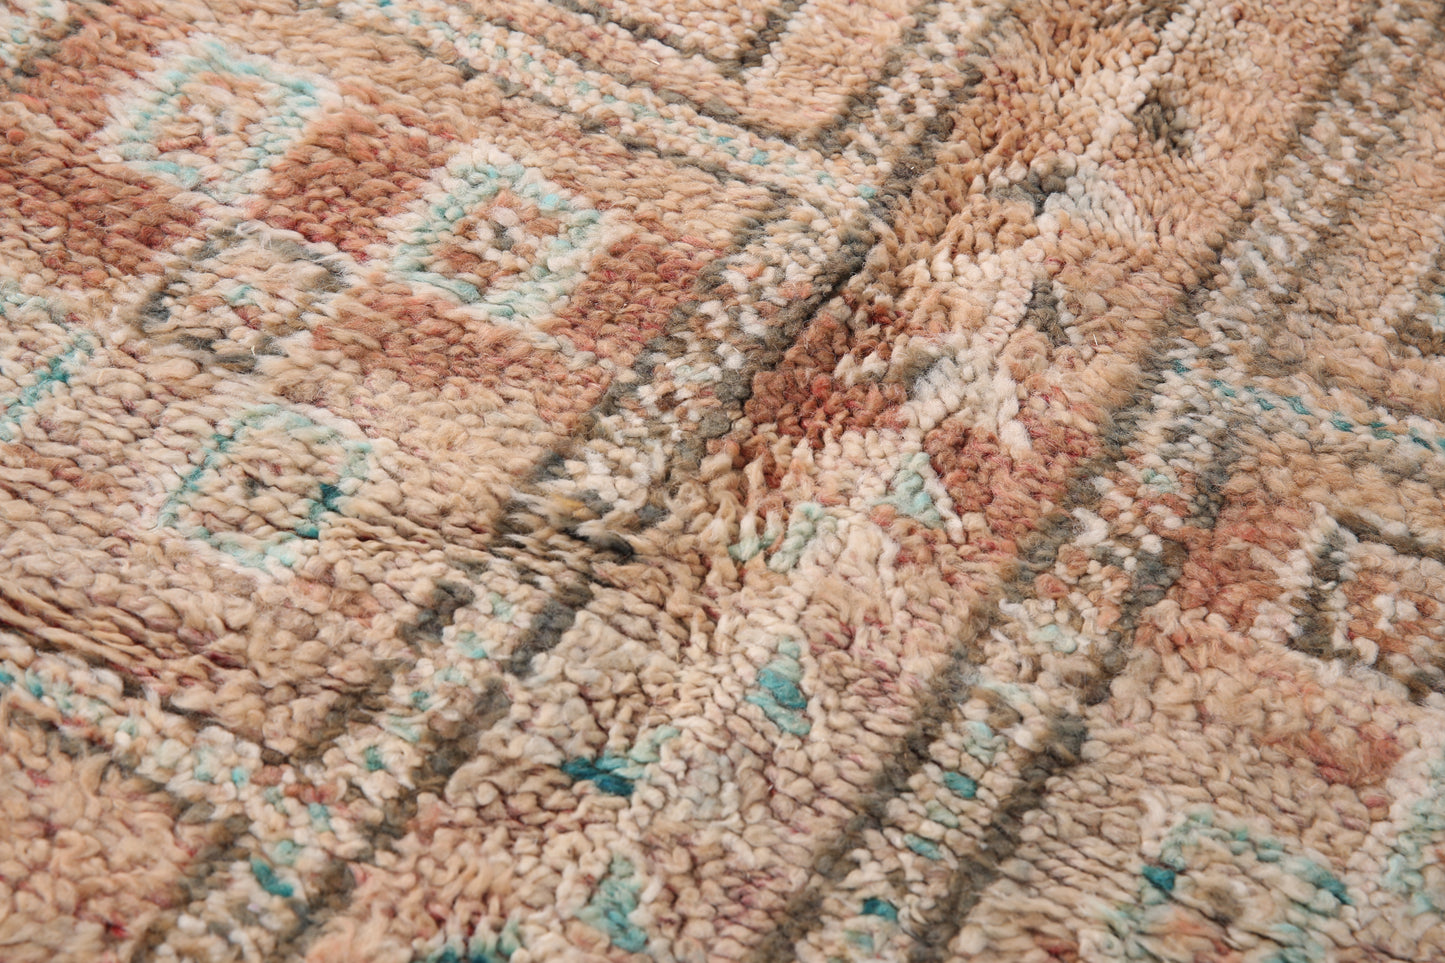 Vintage authentischer marokkanischer Berberteppich 5,5 FT x 7,3 FT - Vintage marokkanischer Teppich - handgemachter Teppich - Berberteppich - alter Boho-Teppich - Einzigartiger Teppich